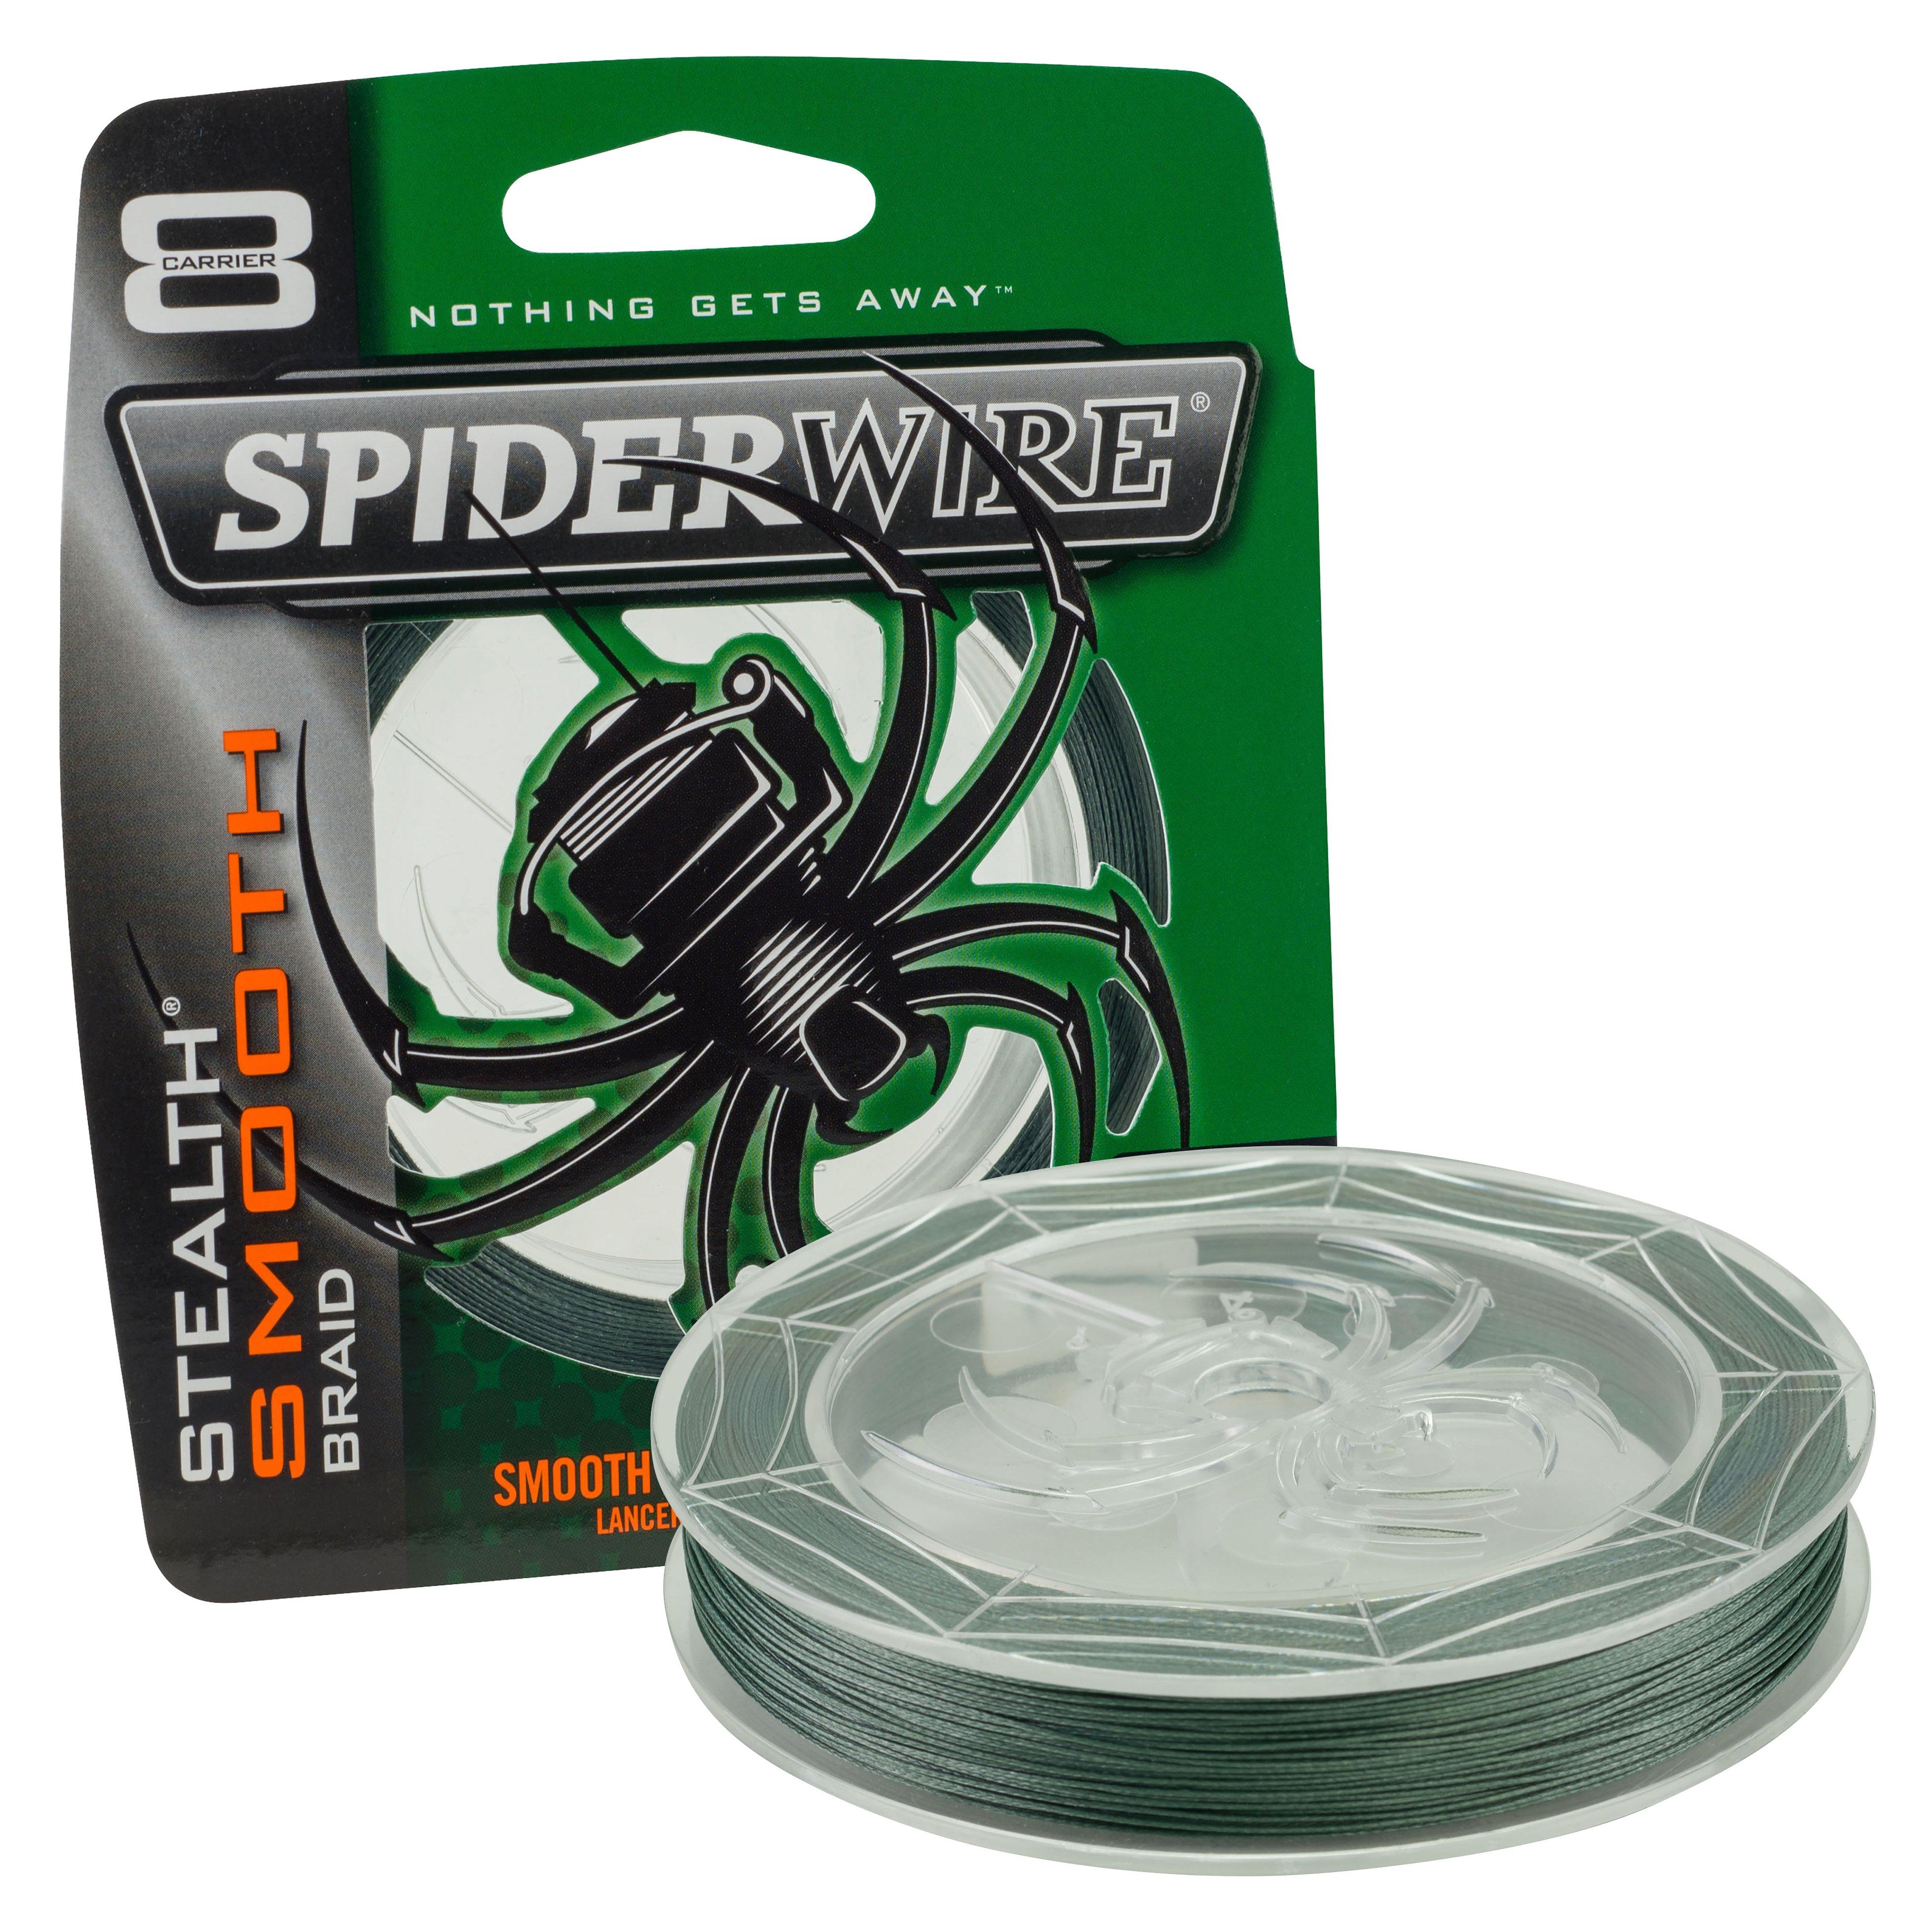 Spiderwire Stealth Smooth Superline